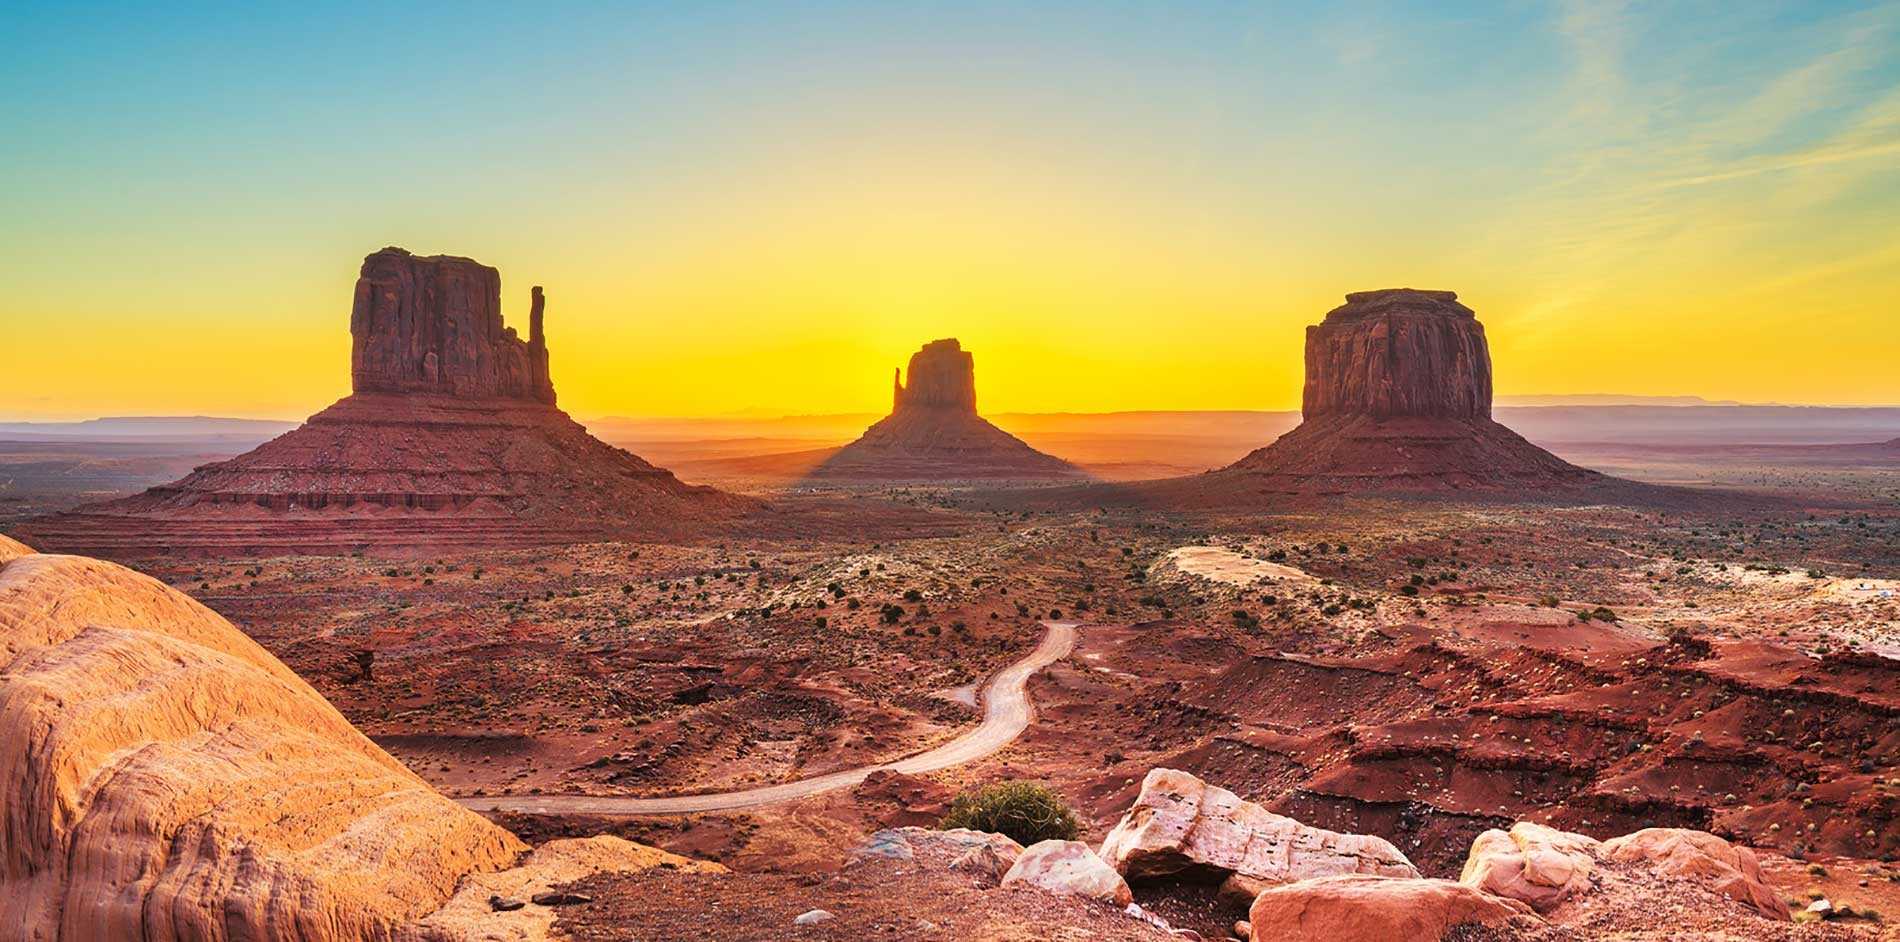 Kayenta - Arizona gây ấn tượng bằng các cảnh quan độc đáo trông như những ngọn lửa màu đỏ nổi lên giữa sa mạc